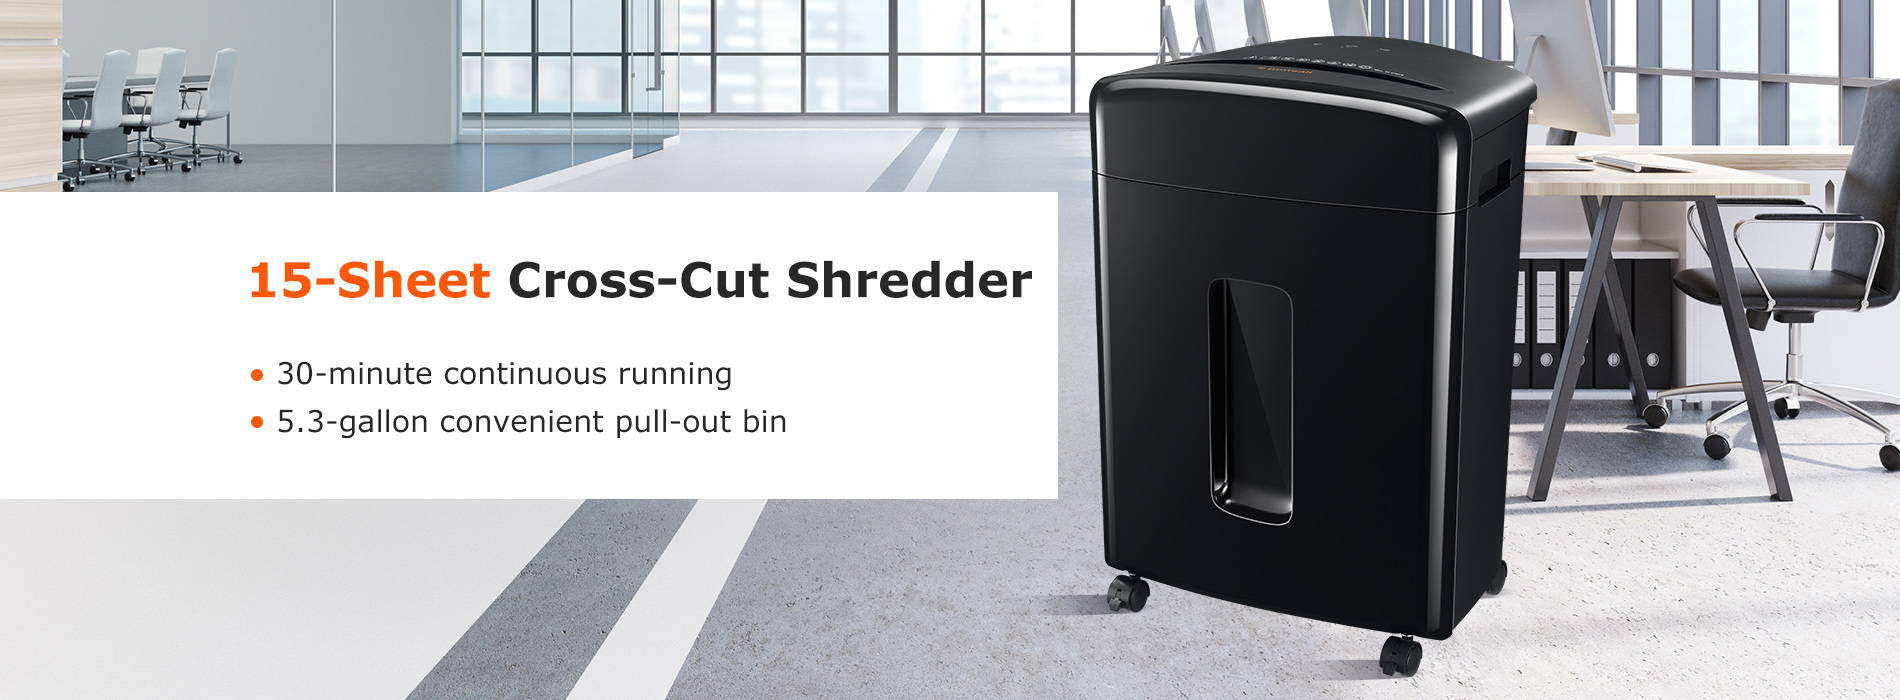 15-Sheet Cross-Cut Shredder 30 minutes contimuous running 5.3-gallon convenient pull-out bin